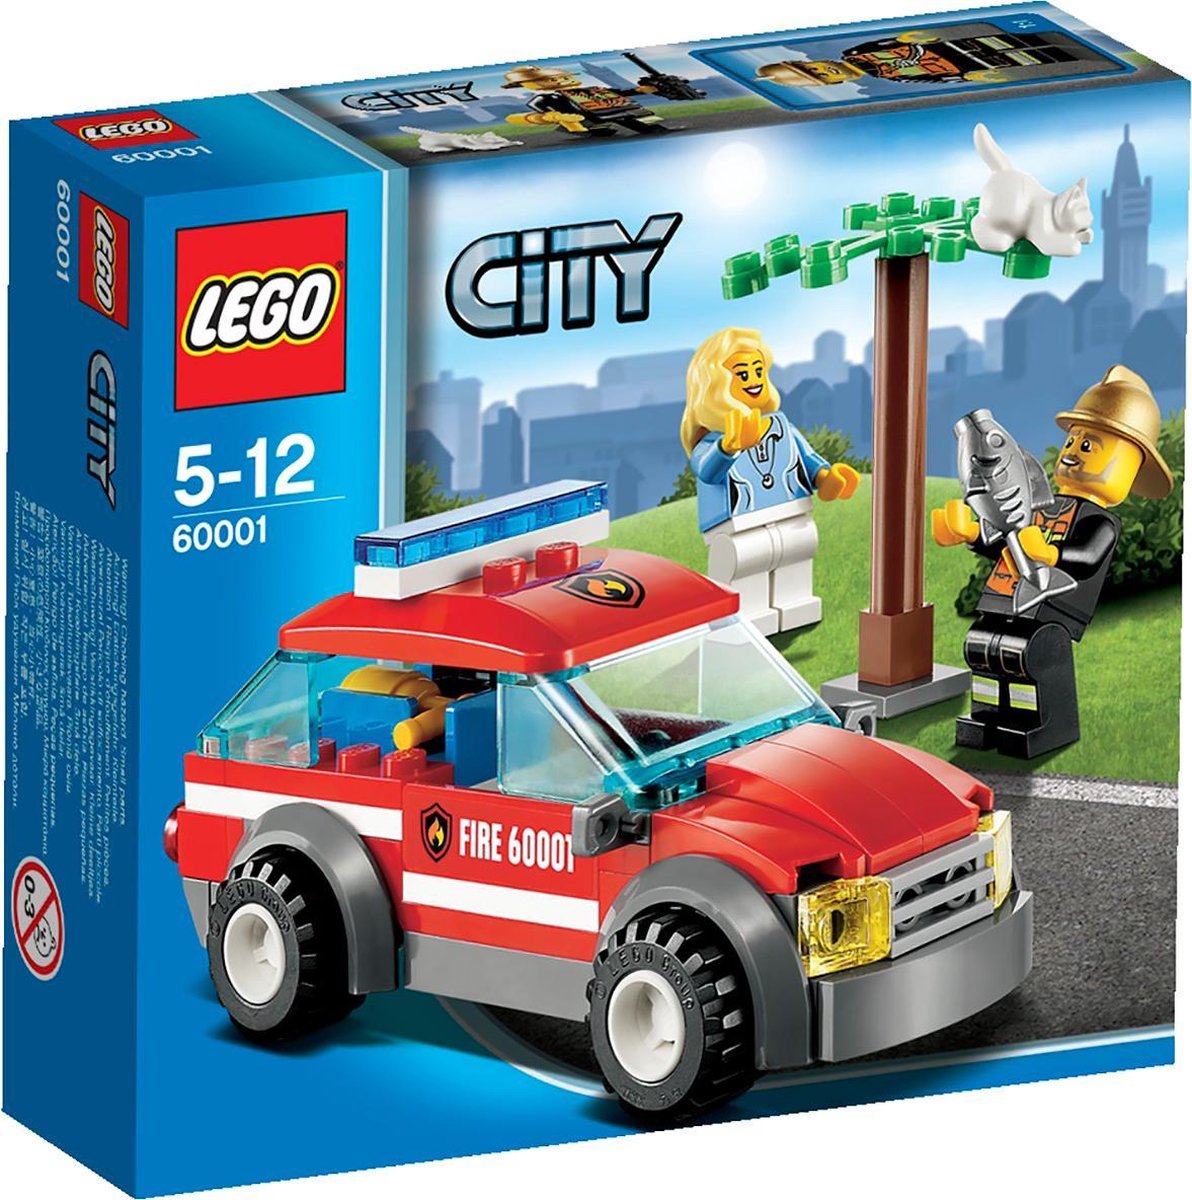 LEGO® City 60279 Le camion des pompiers, Idée Cadeau, Jouet pour